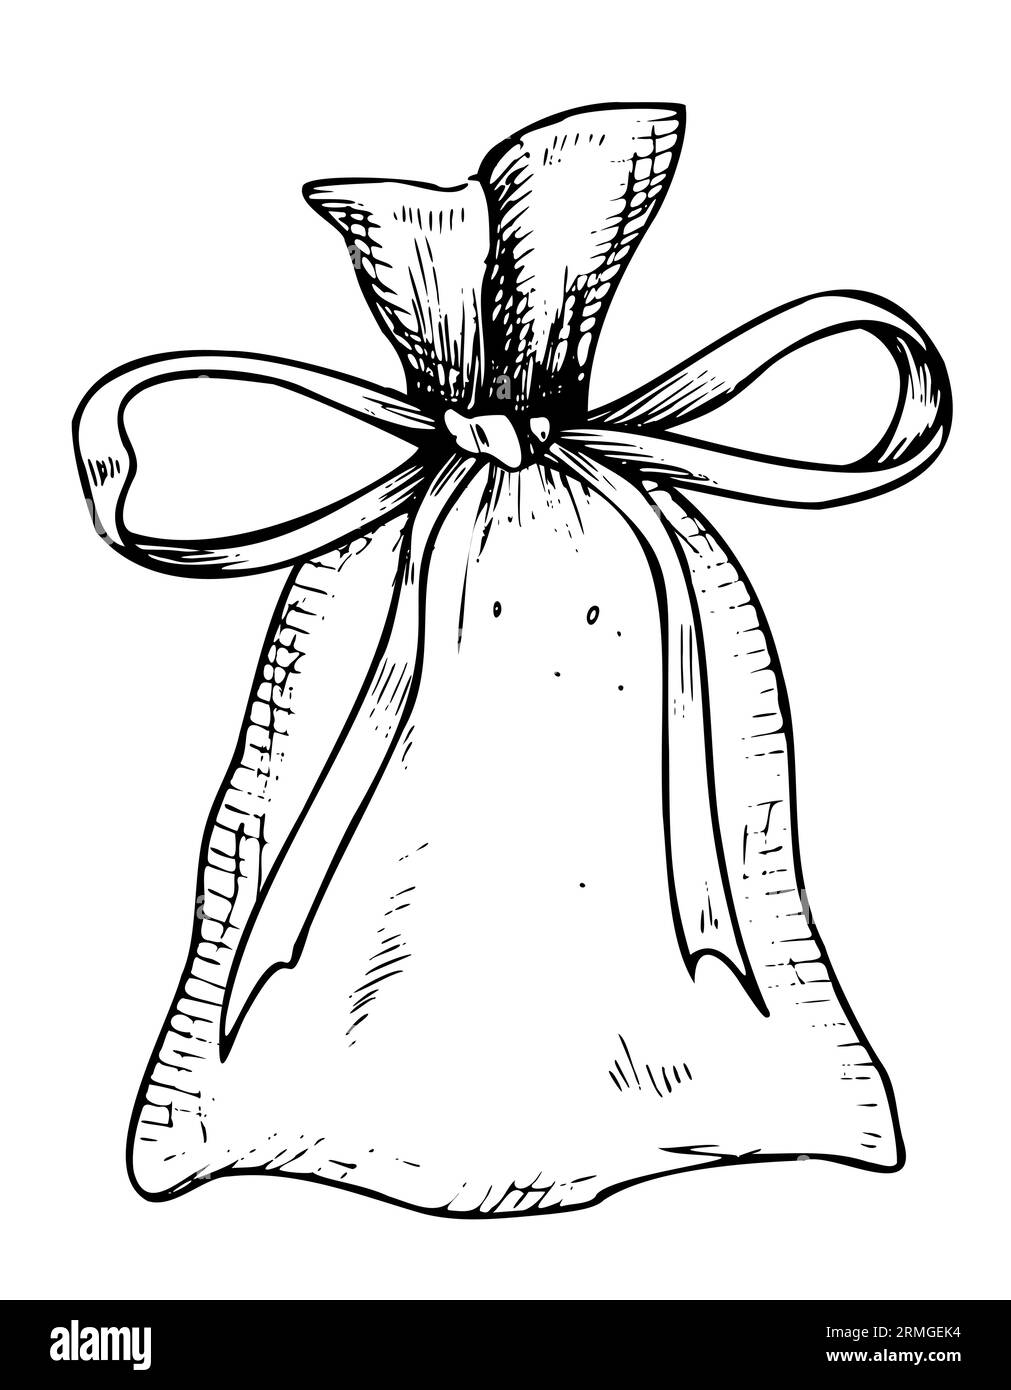 Bustina aromatica. Illustrazione vettoriale disegnata a mano di una borsa con nastro per aromaterapia e rilassante isolata su sfondo bianco dipinta da inchiostri neri. Disegno del sacchetto di erbe per fragranza. Illustrazione Vettoriale